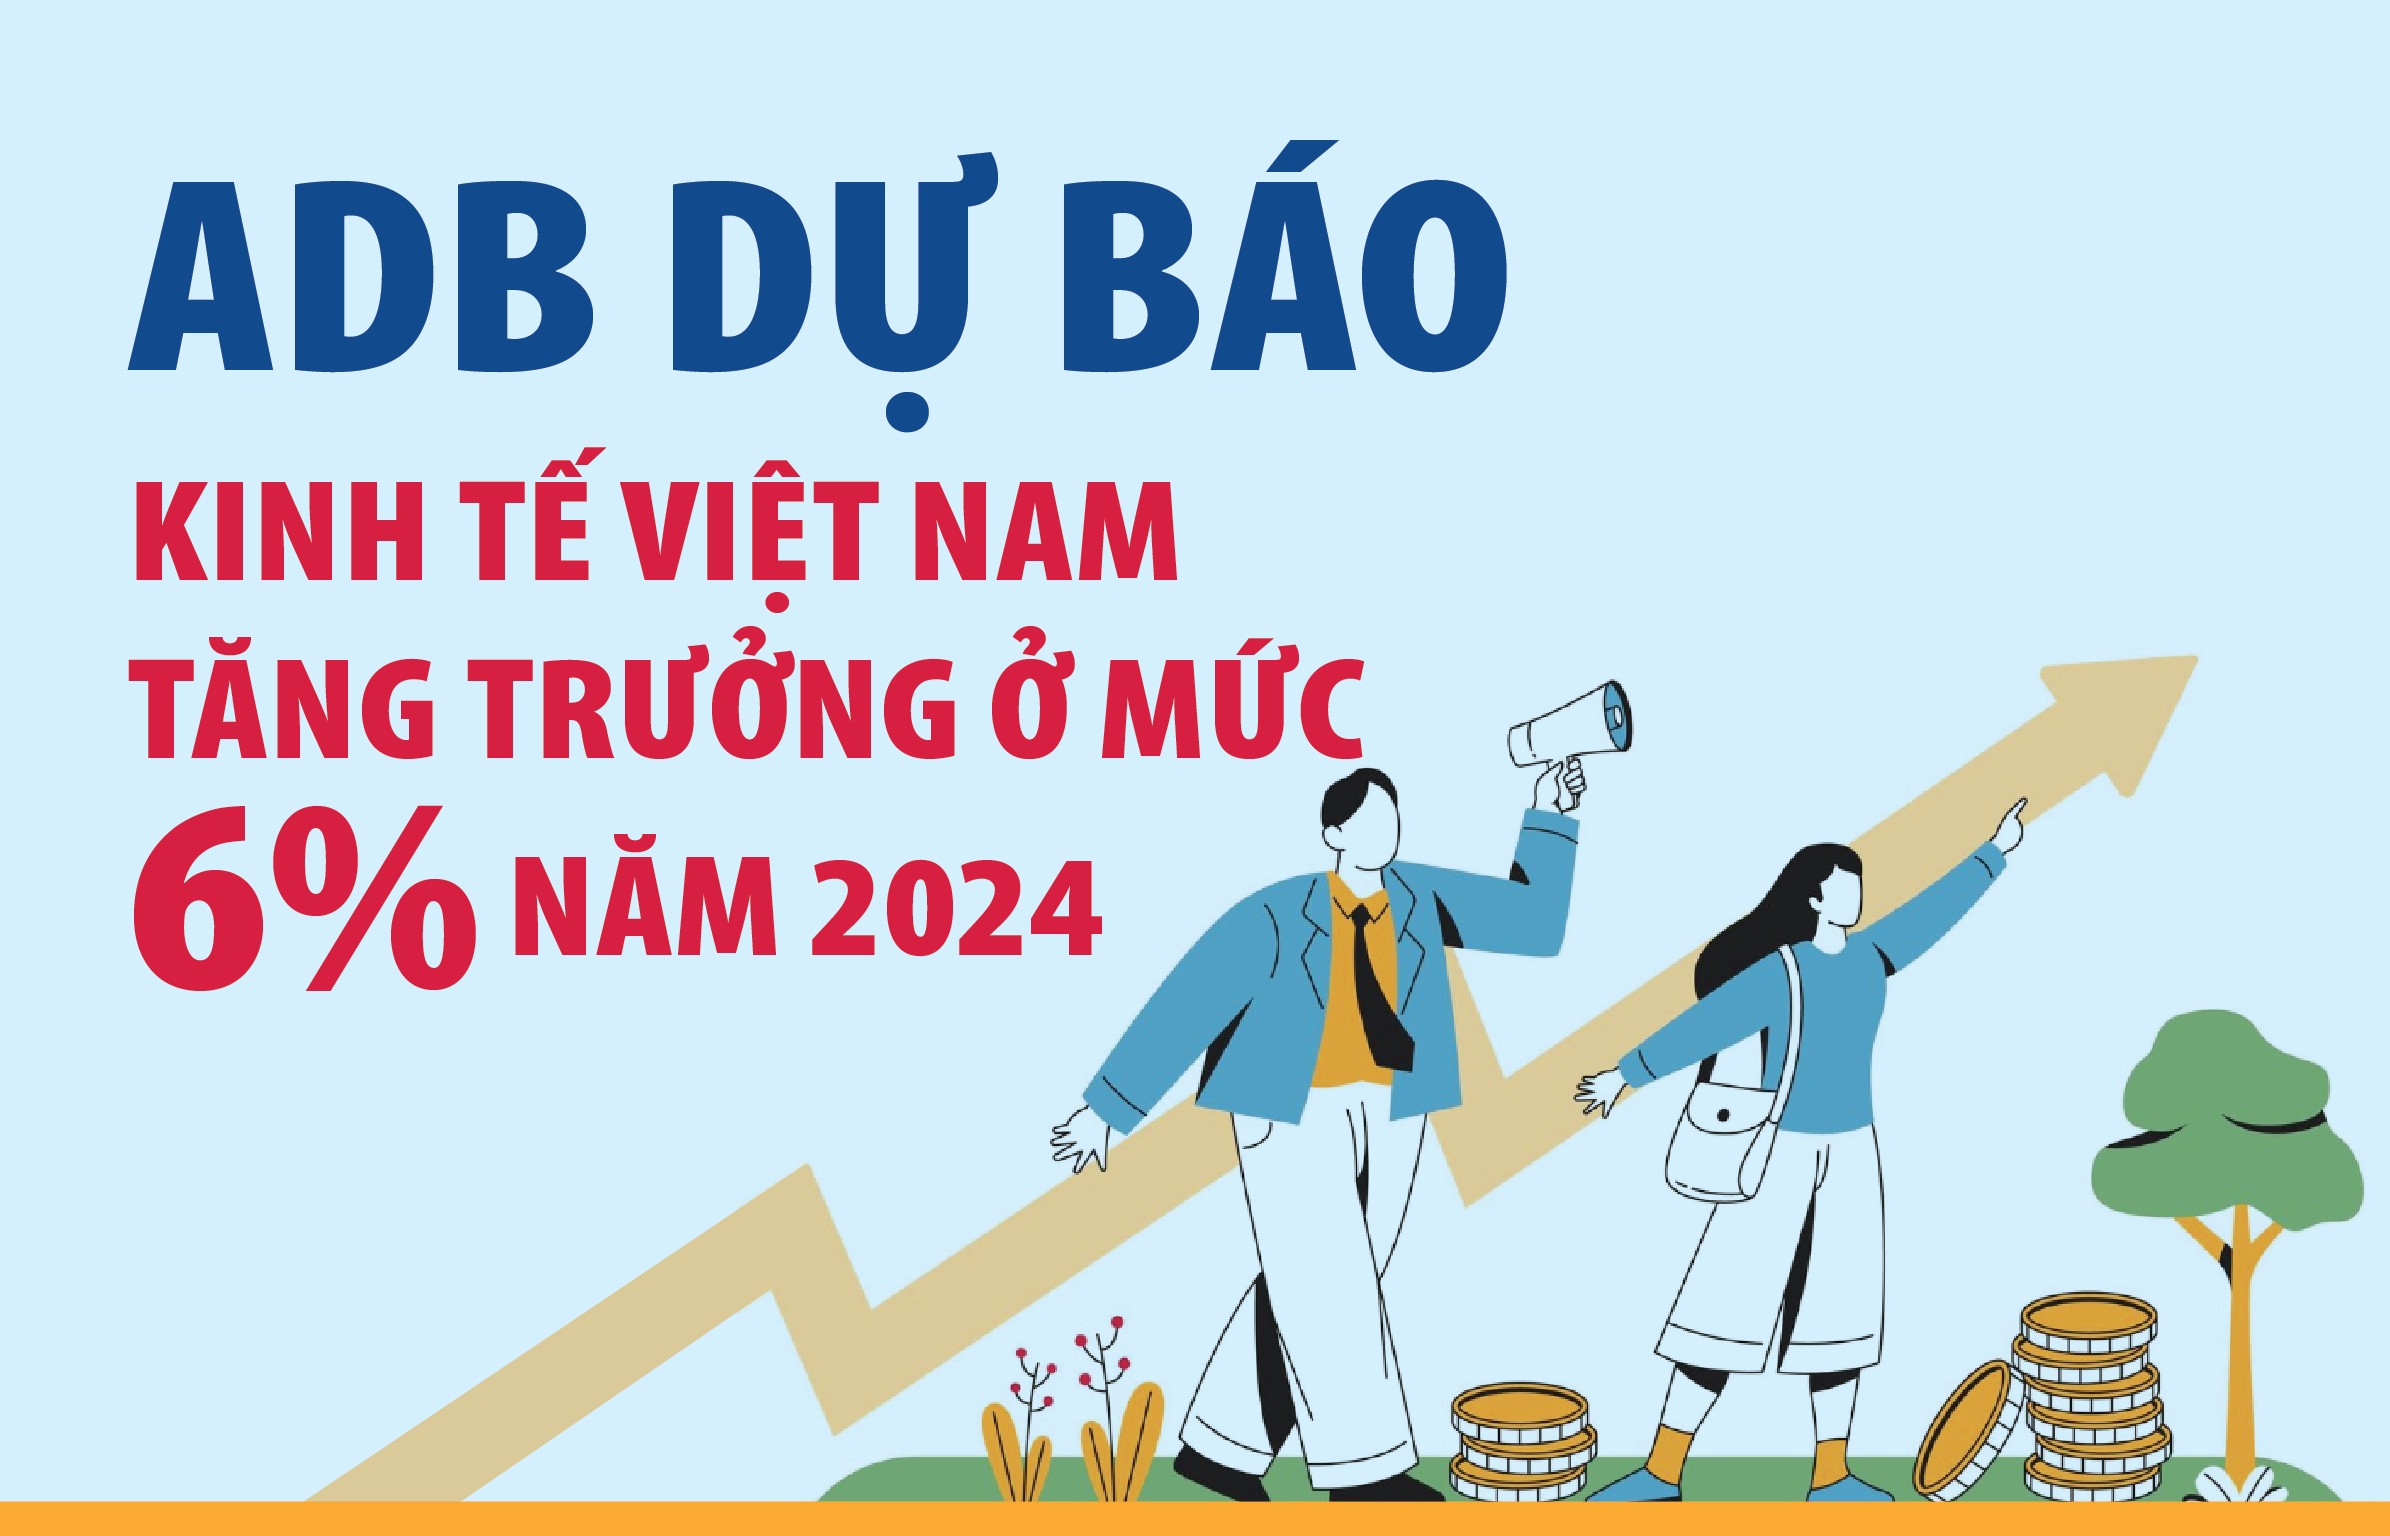 ADB dự báo kinh tế Việt Nam tăng trưởng ở mức 6% trong năm 2024